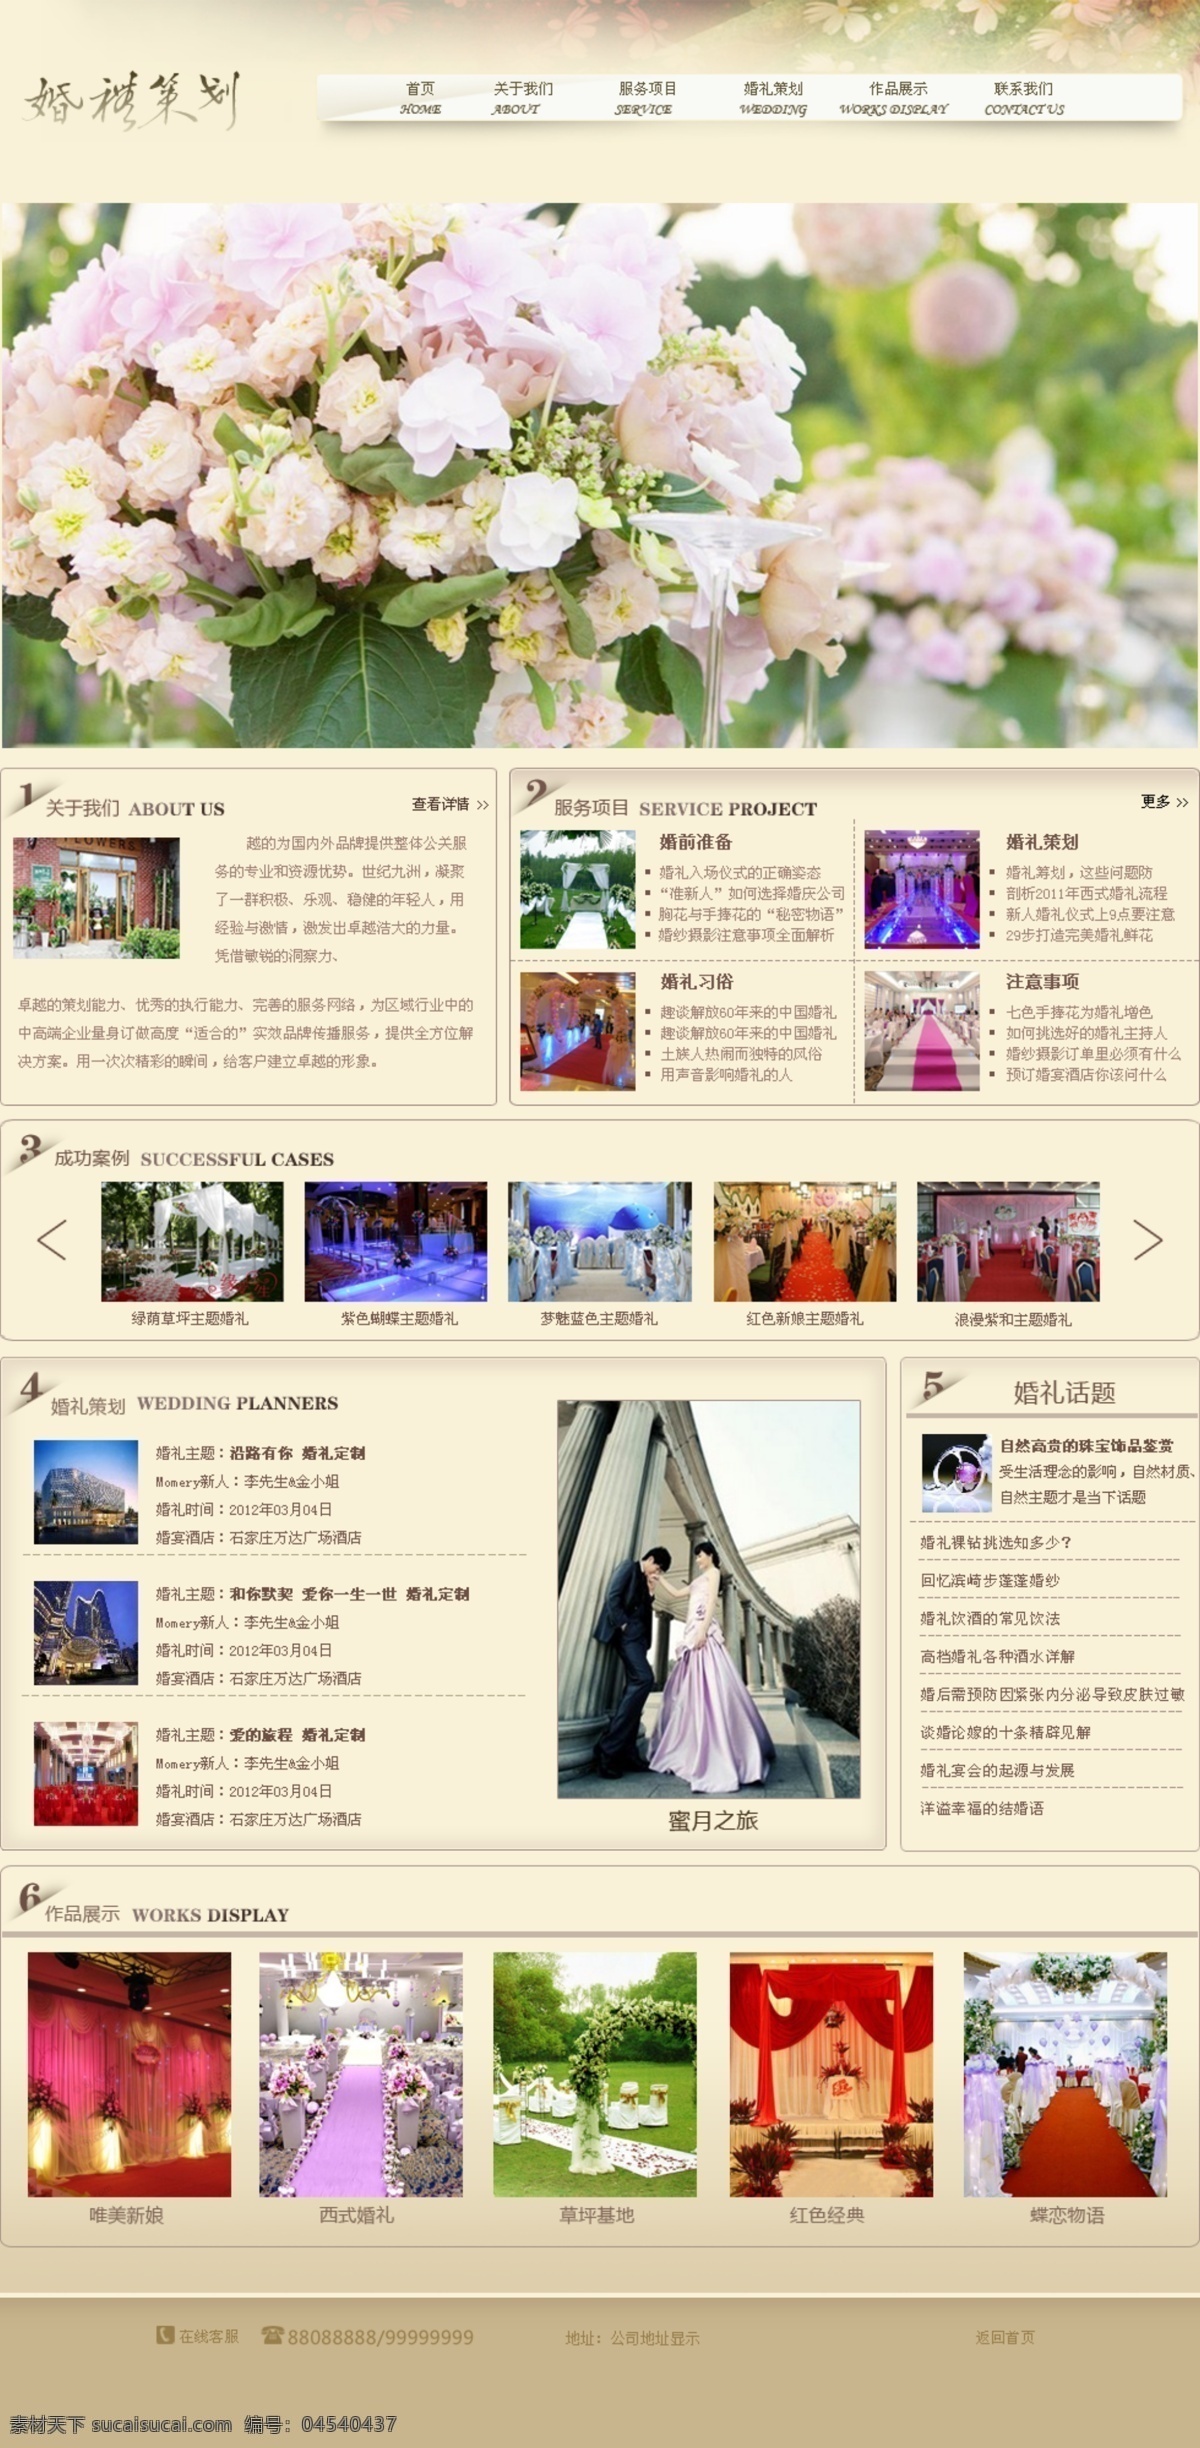 婚礼策划 婚庆网站模板 网页模板 网站模板 源文件 中文模板 网站 模板 模板下载 浅色网站模板 网页素材